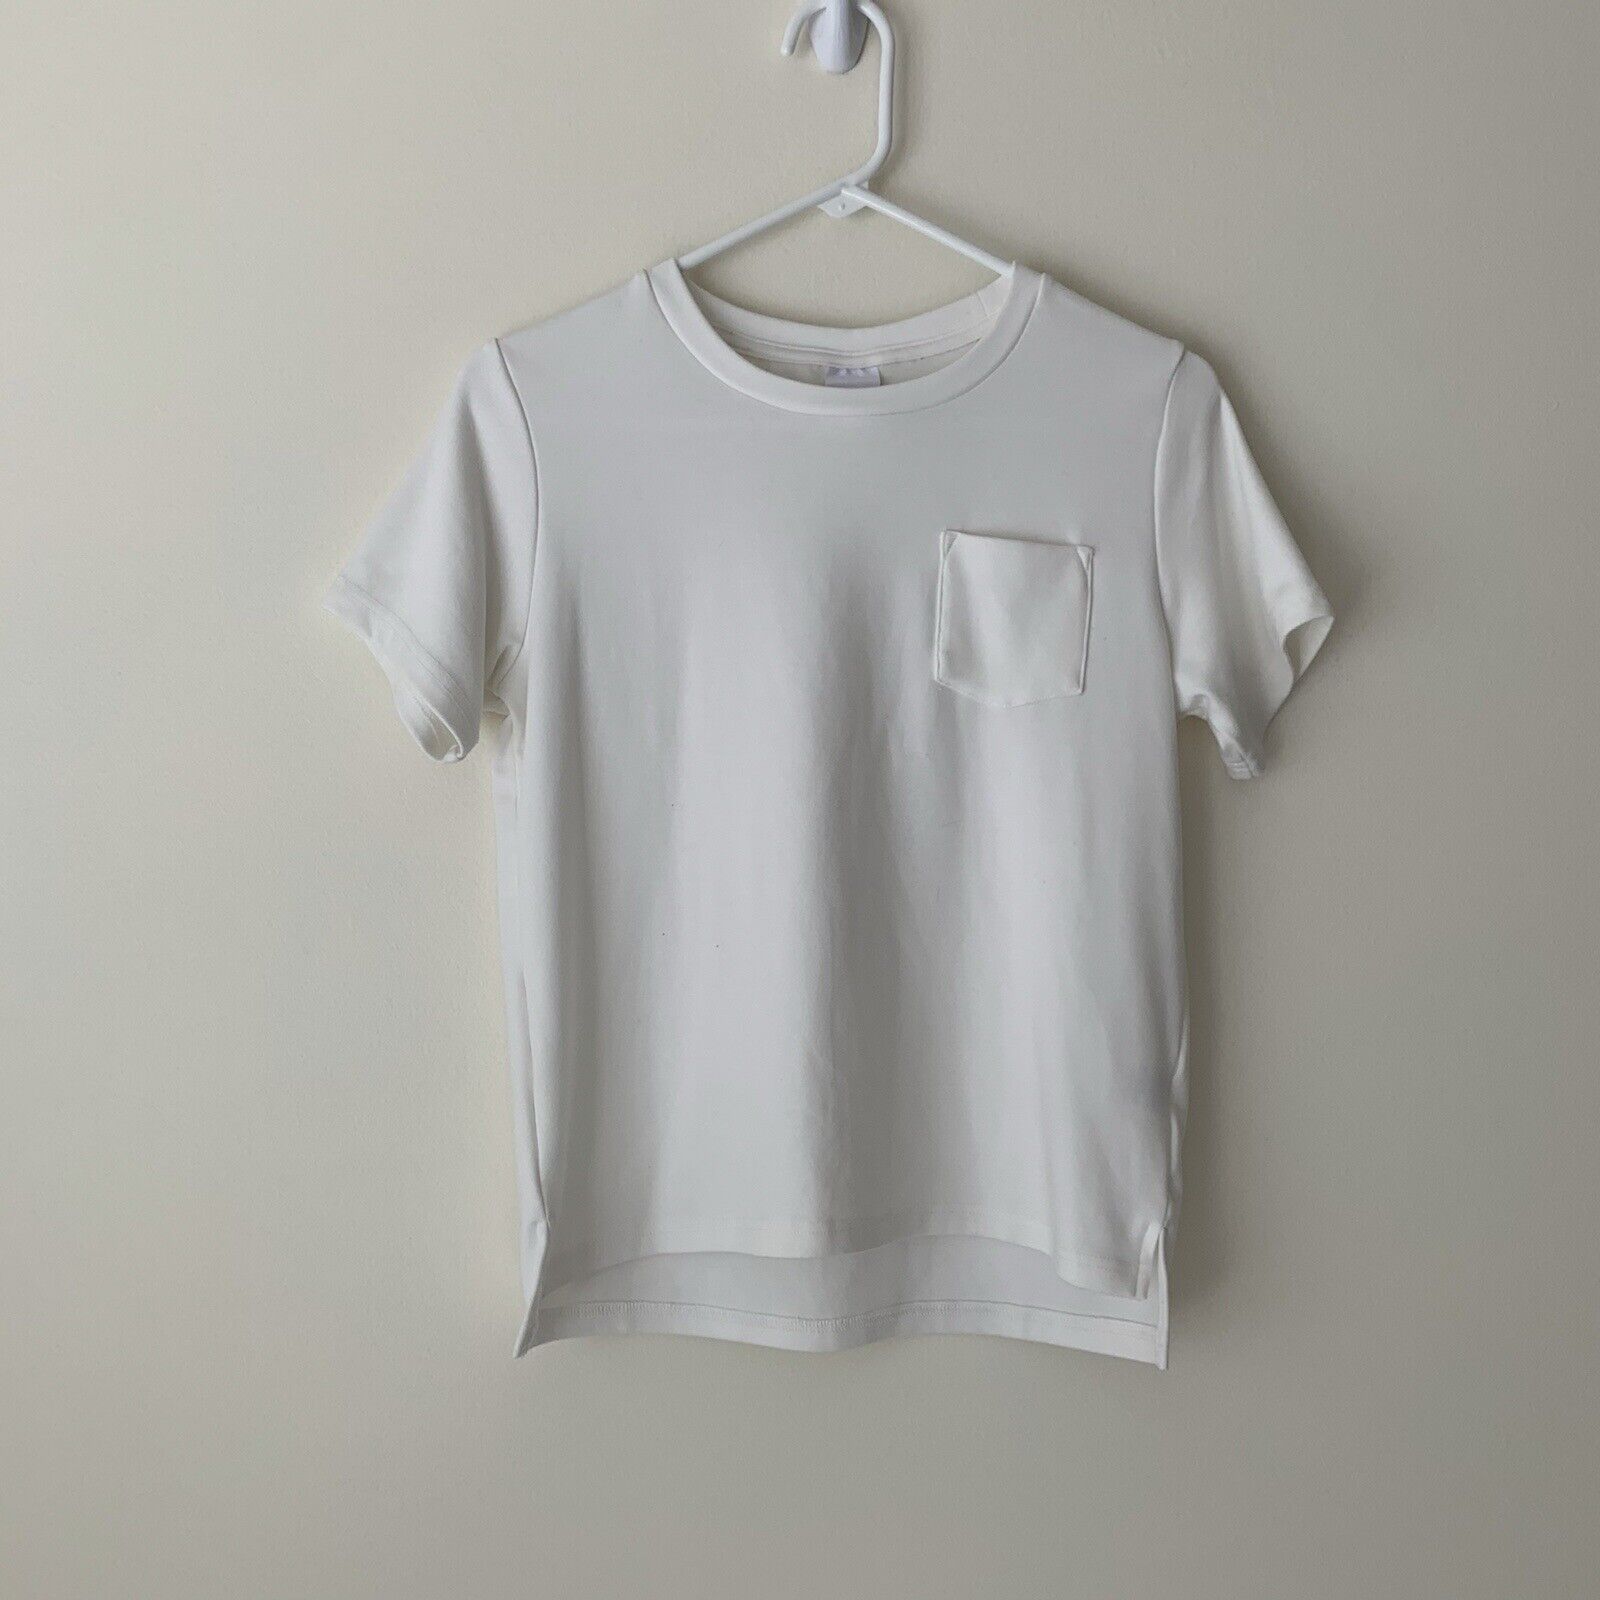 Omtrek Lada Raad NEW Girls Superism Ben Baller Kids Clothing Brand White Pocket T-Shirt Size  10 | eBay